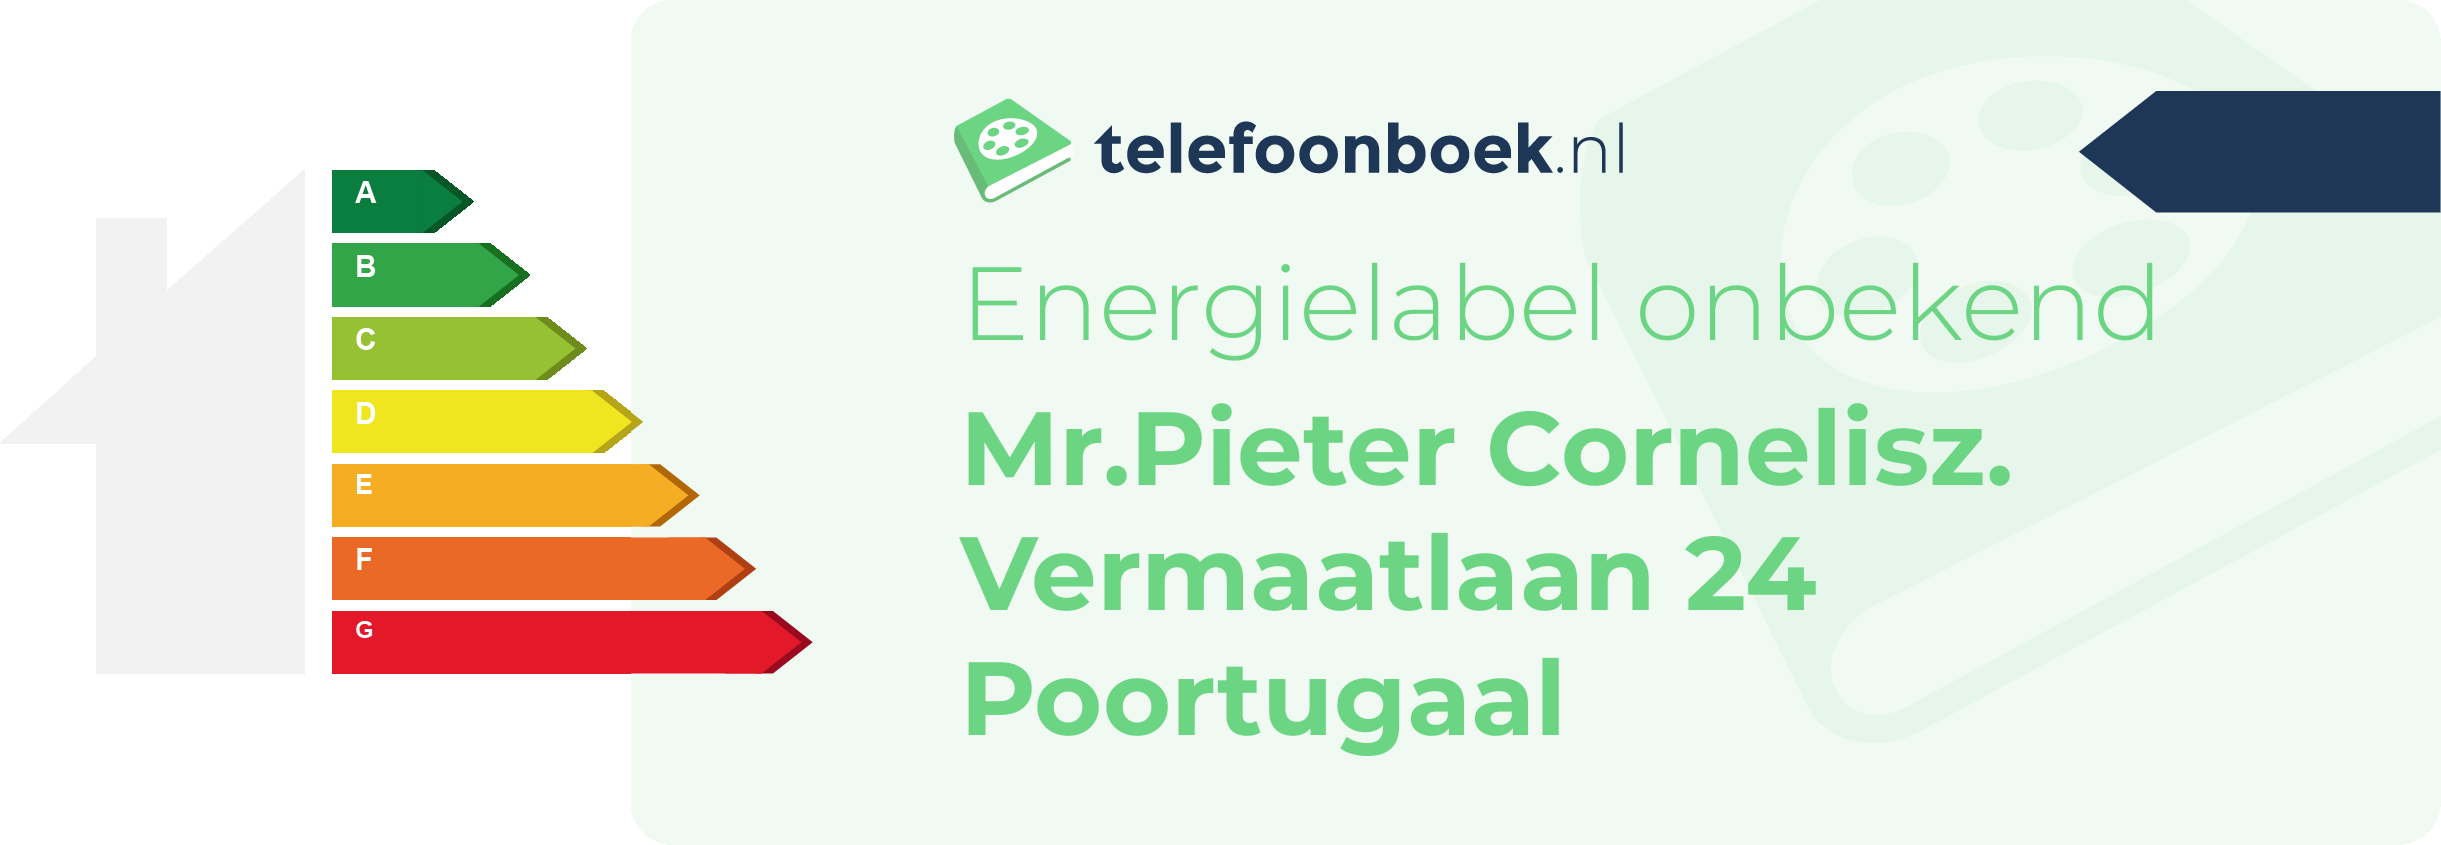 Energielabel Mr.Pieter Cornelisz. Vermaatlaan 24 Poortugaal